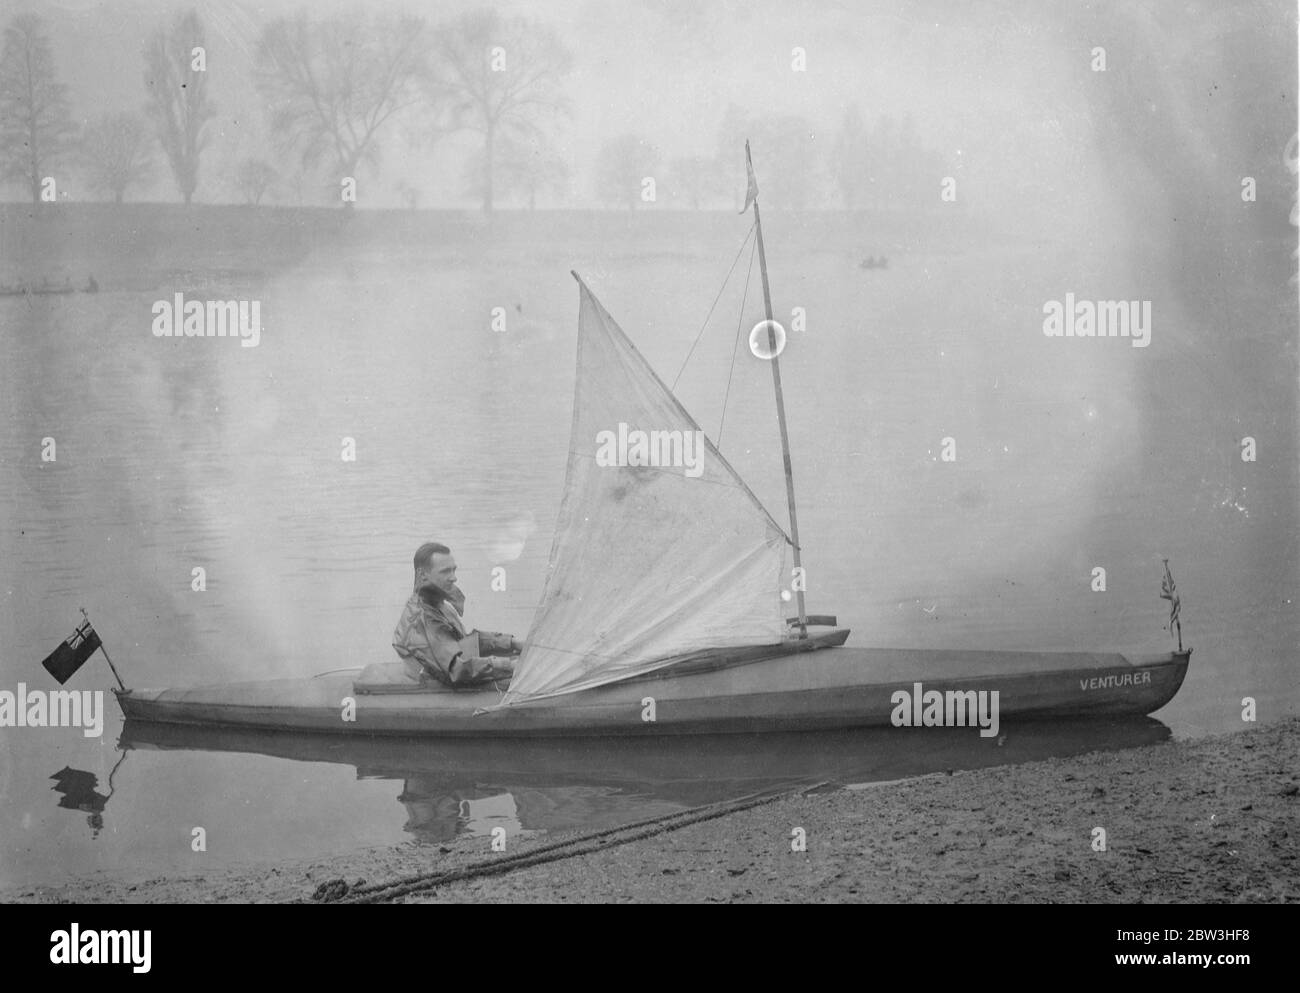 Homme de Londres pour tenter de faire du canoë-kayak à travers l'Atlantique , pour Â £ 5,000 prix . Photos : M. Leslie William Fairnie , qui propose de faire une traversée en canoë de l'Atlantique , en essayant son canoë sur la Tamise . 10 février 1935 Banque D'Images